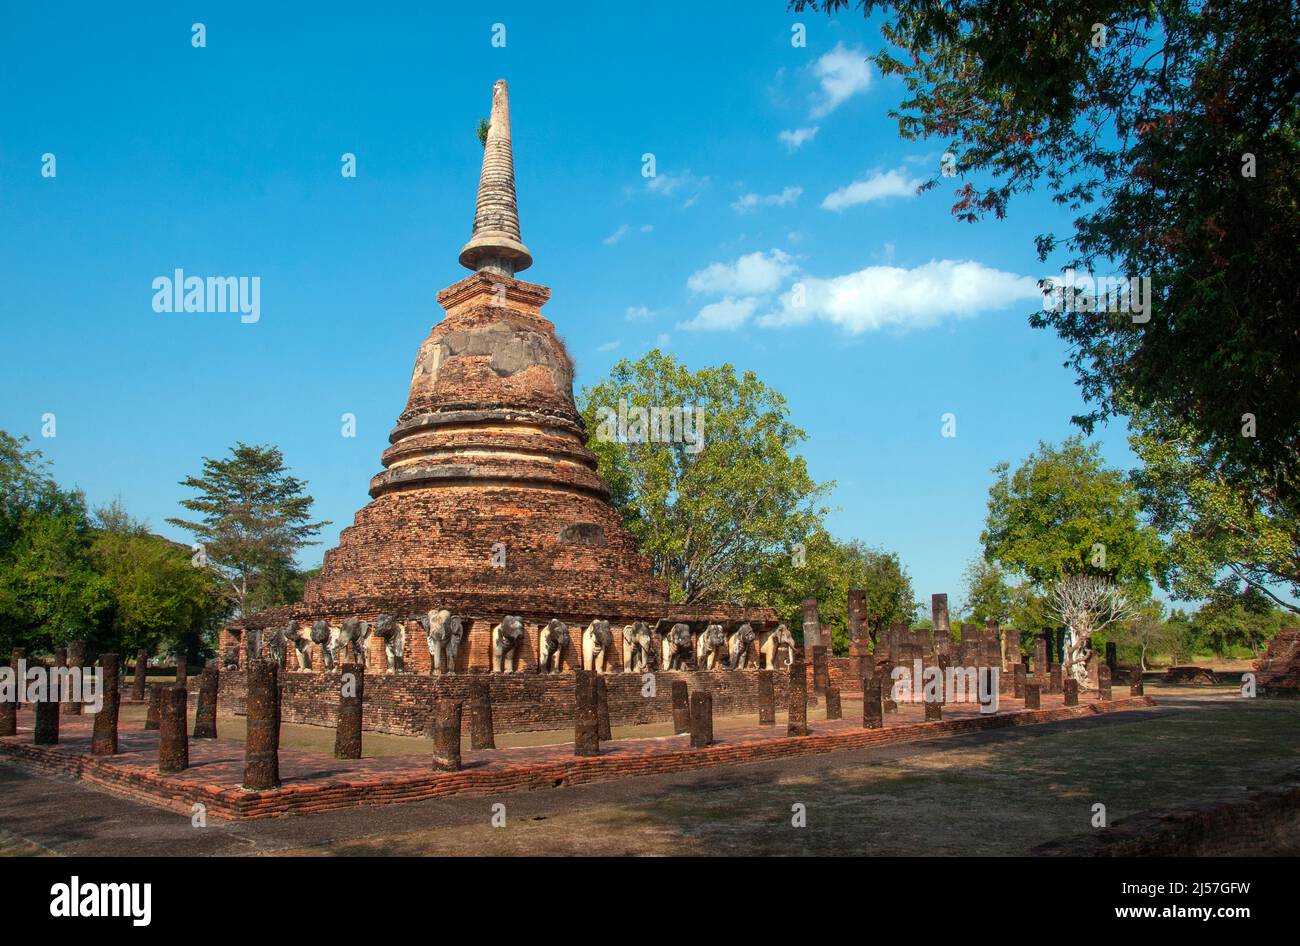 Thailand: Wat Chang Lom, Sukhothai Historical Park, Old Sukhothai. Sukhothai, was wörtlich „Morgenröte des Glücks“ bedeutet, war die Hauptstadt des Königreichs Sukhothai und wurde 1238 gegründet. Es war die Hauptstadt des thailändischen Reiches für etwa 140 Jahre. Stockfoto